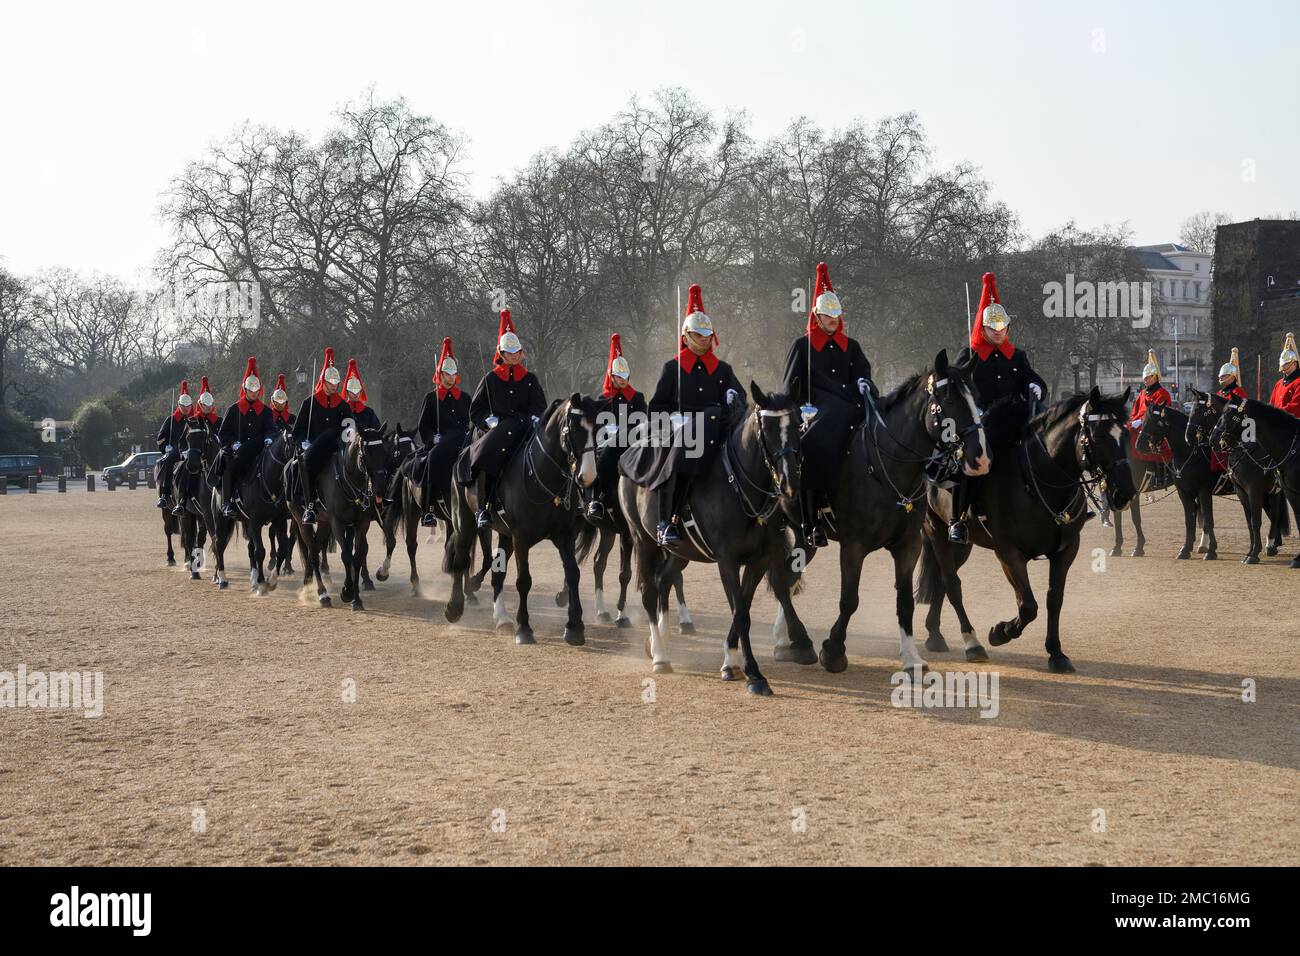 Parade des gardes à cheval, soldats du régiment à cheval de la cavalerie de la maison, White Hall, Westminster, Londres, Angleterre, Grande-Bretagne Banque D'Images